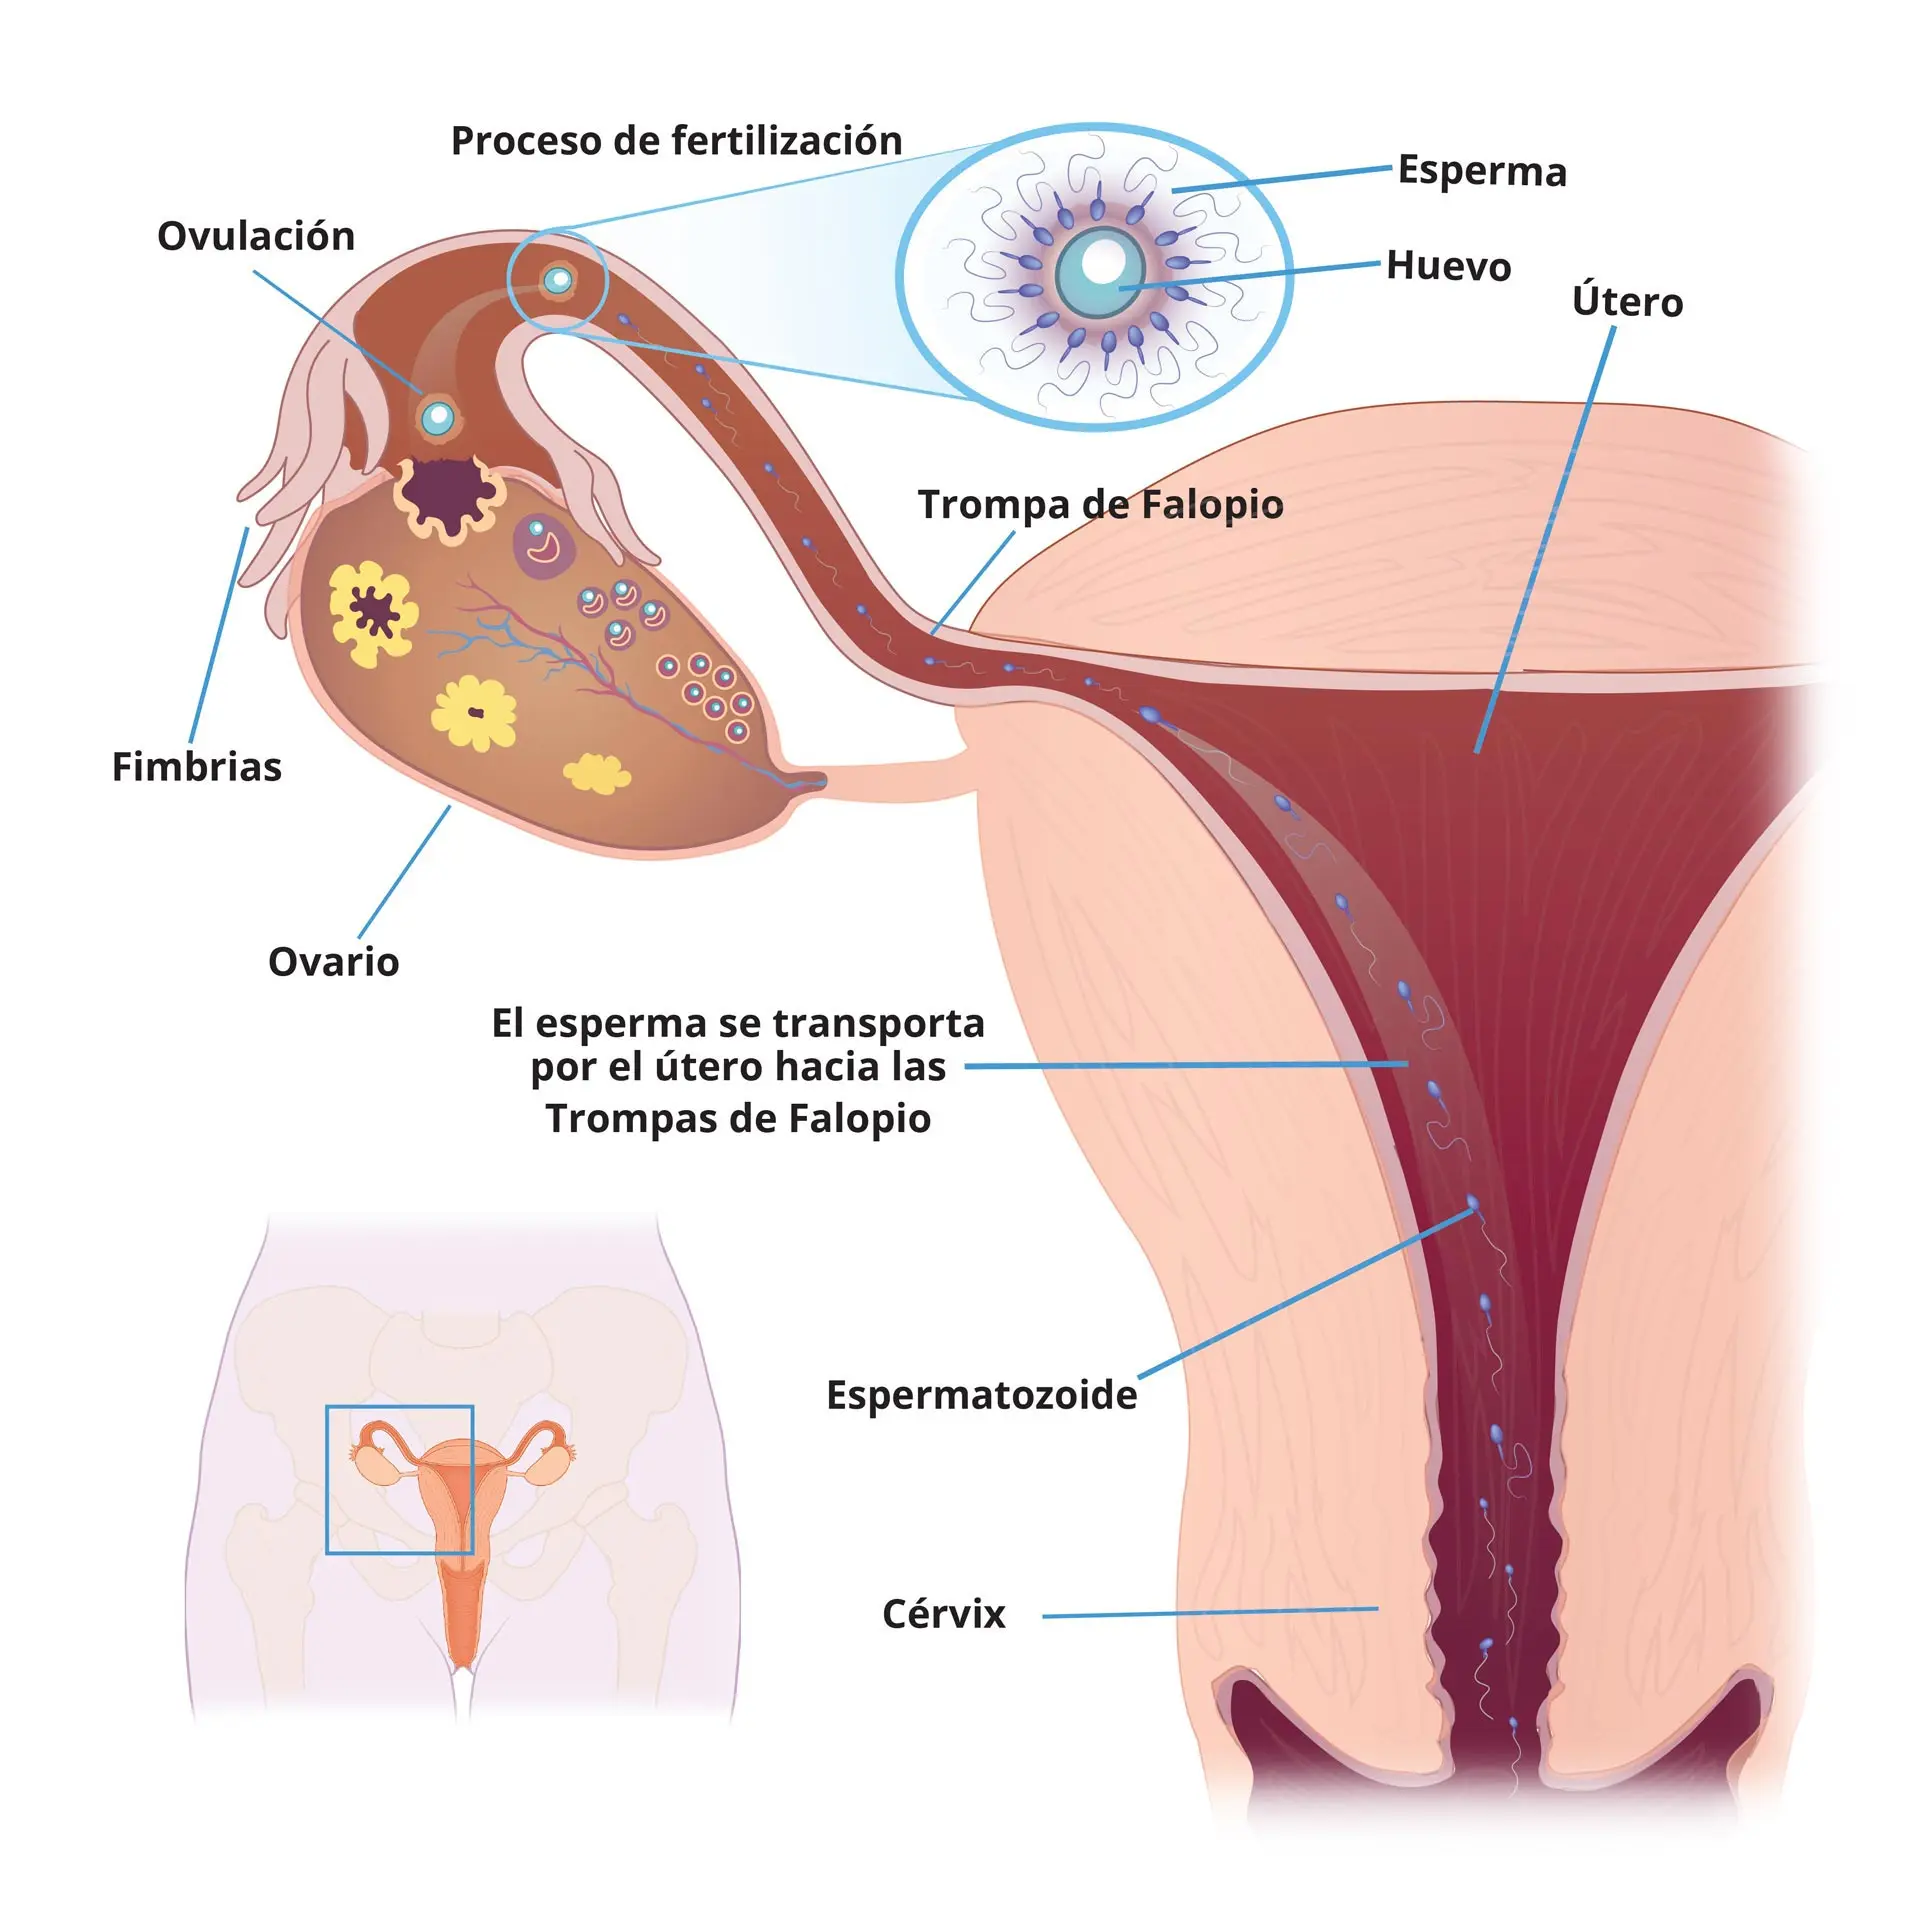 aparato reproductor femenino resumen - Qué es el aparato reproductor femenino en resumen